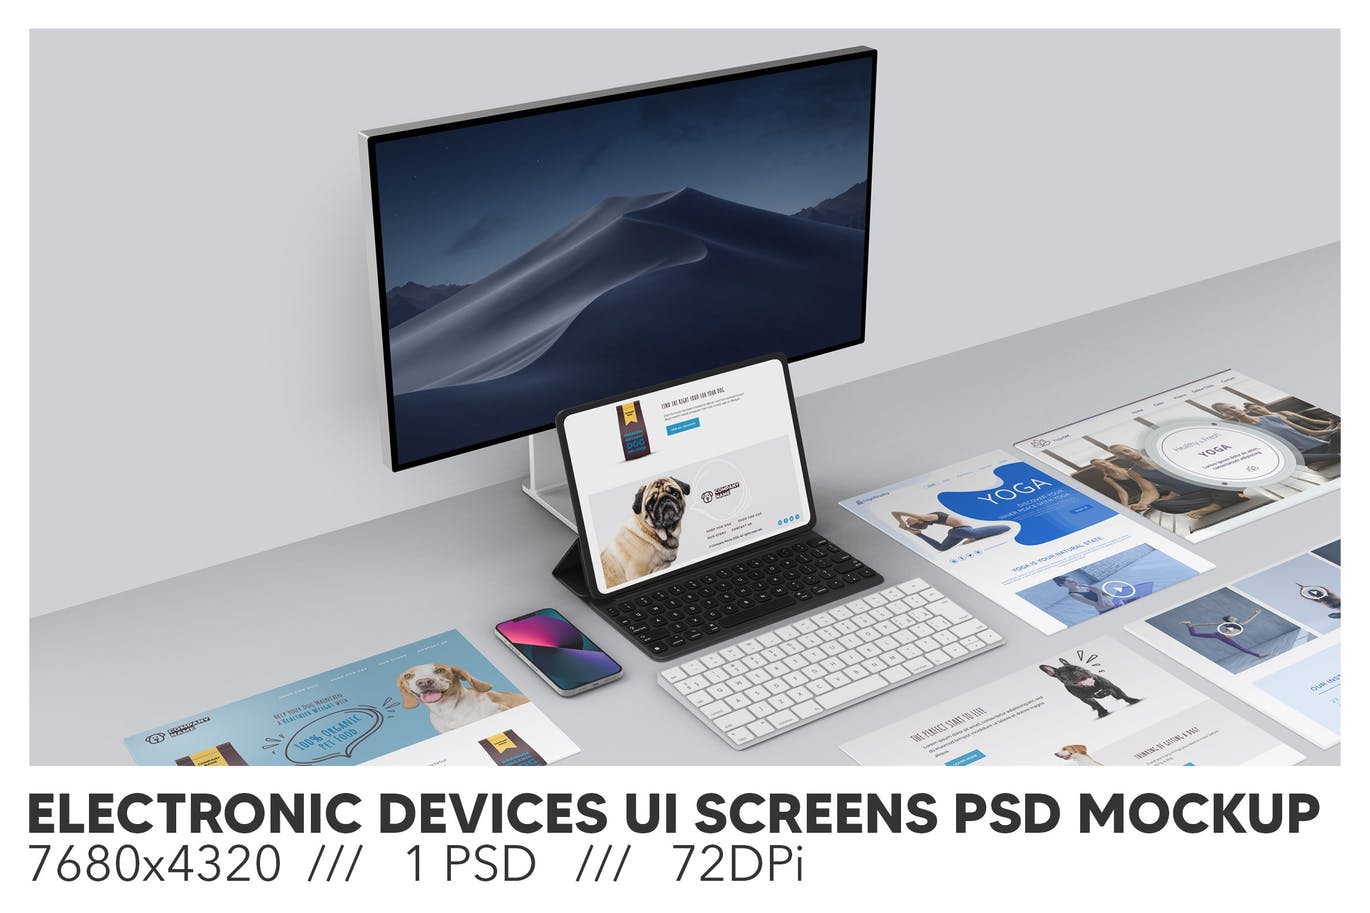 响应式电子设备和UI屏幕样机 (PSD)